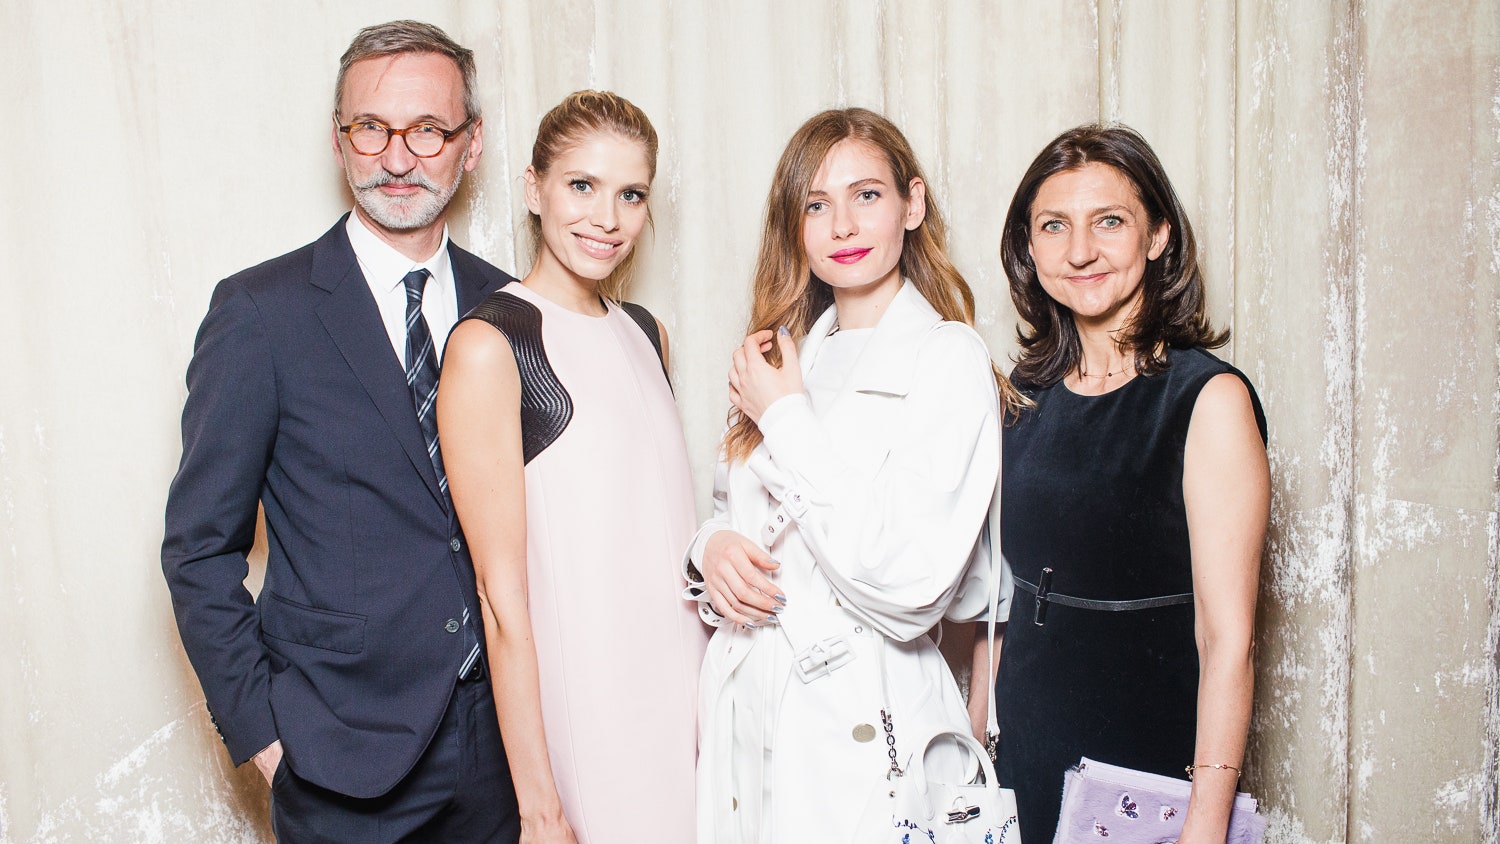 Открытие флагманского бутика Longchamp в ГУМе фото Елены Перминовой Ксении Собчак и других | Glamour